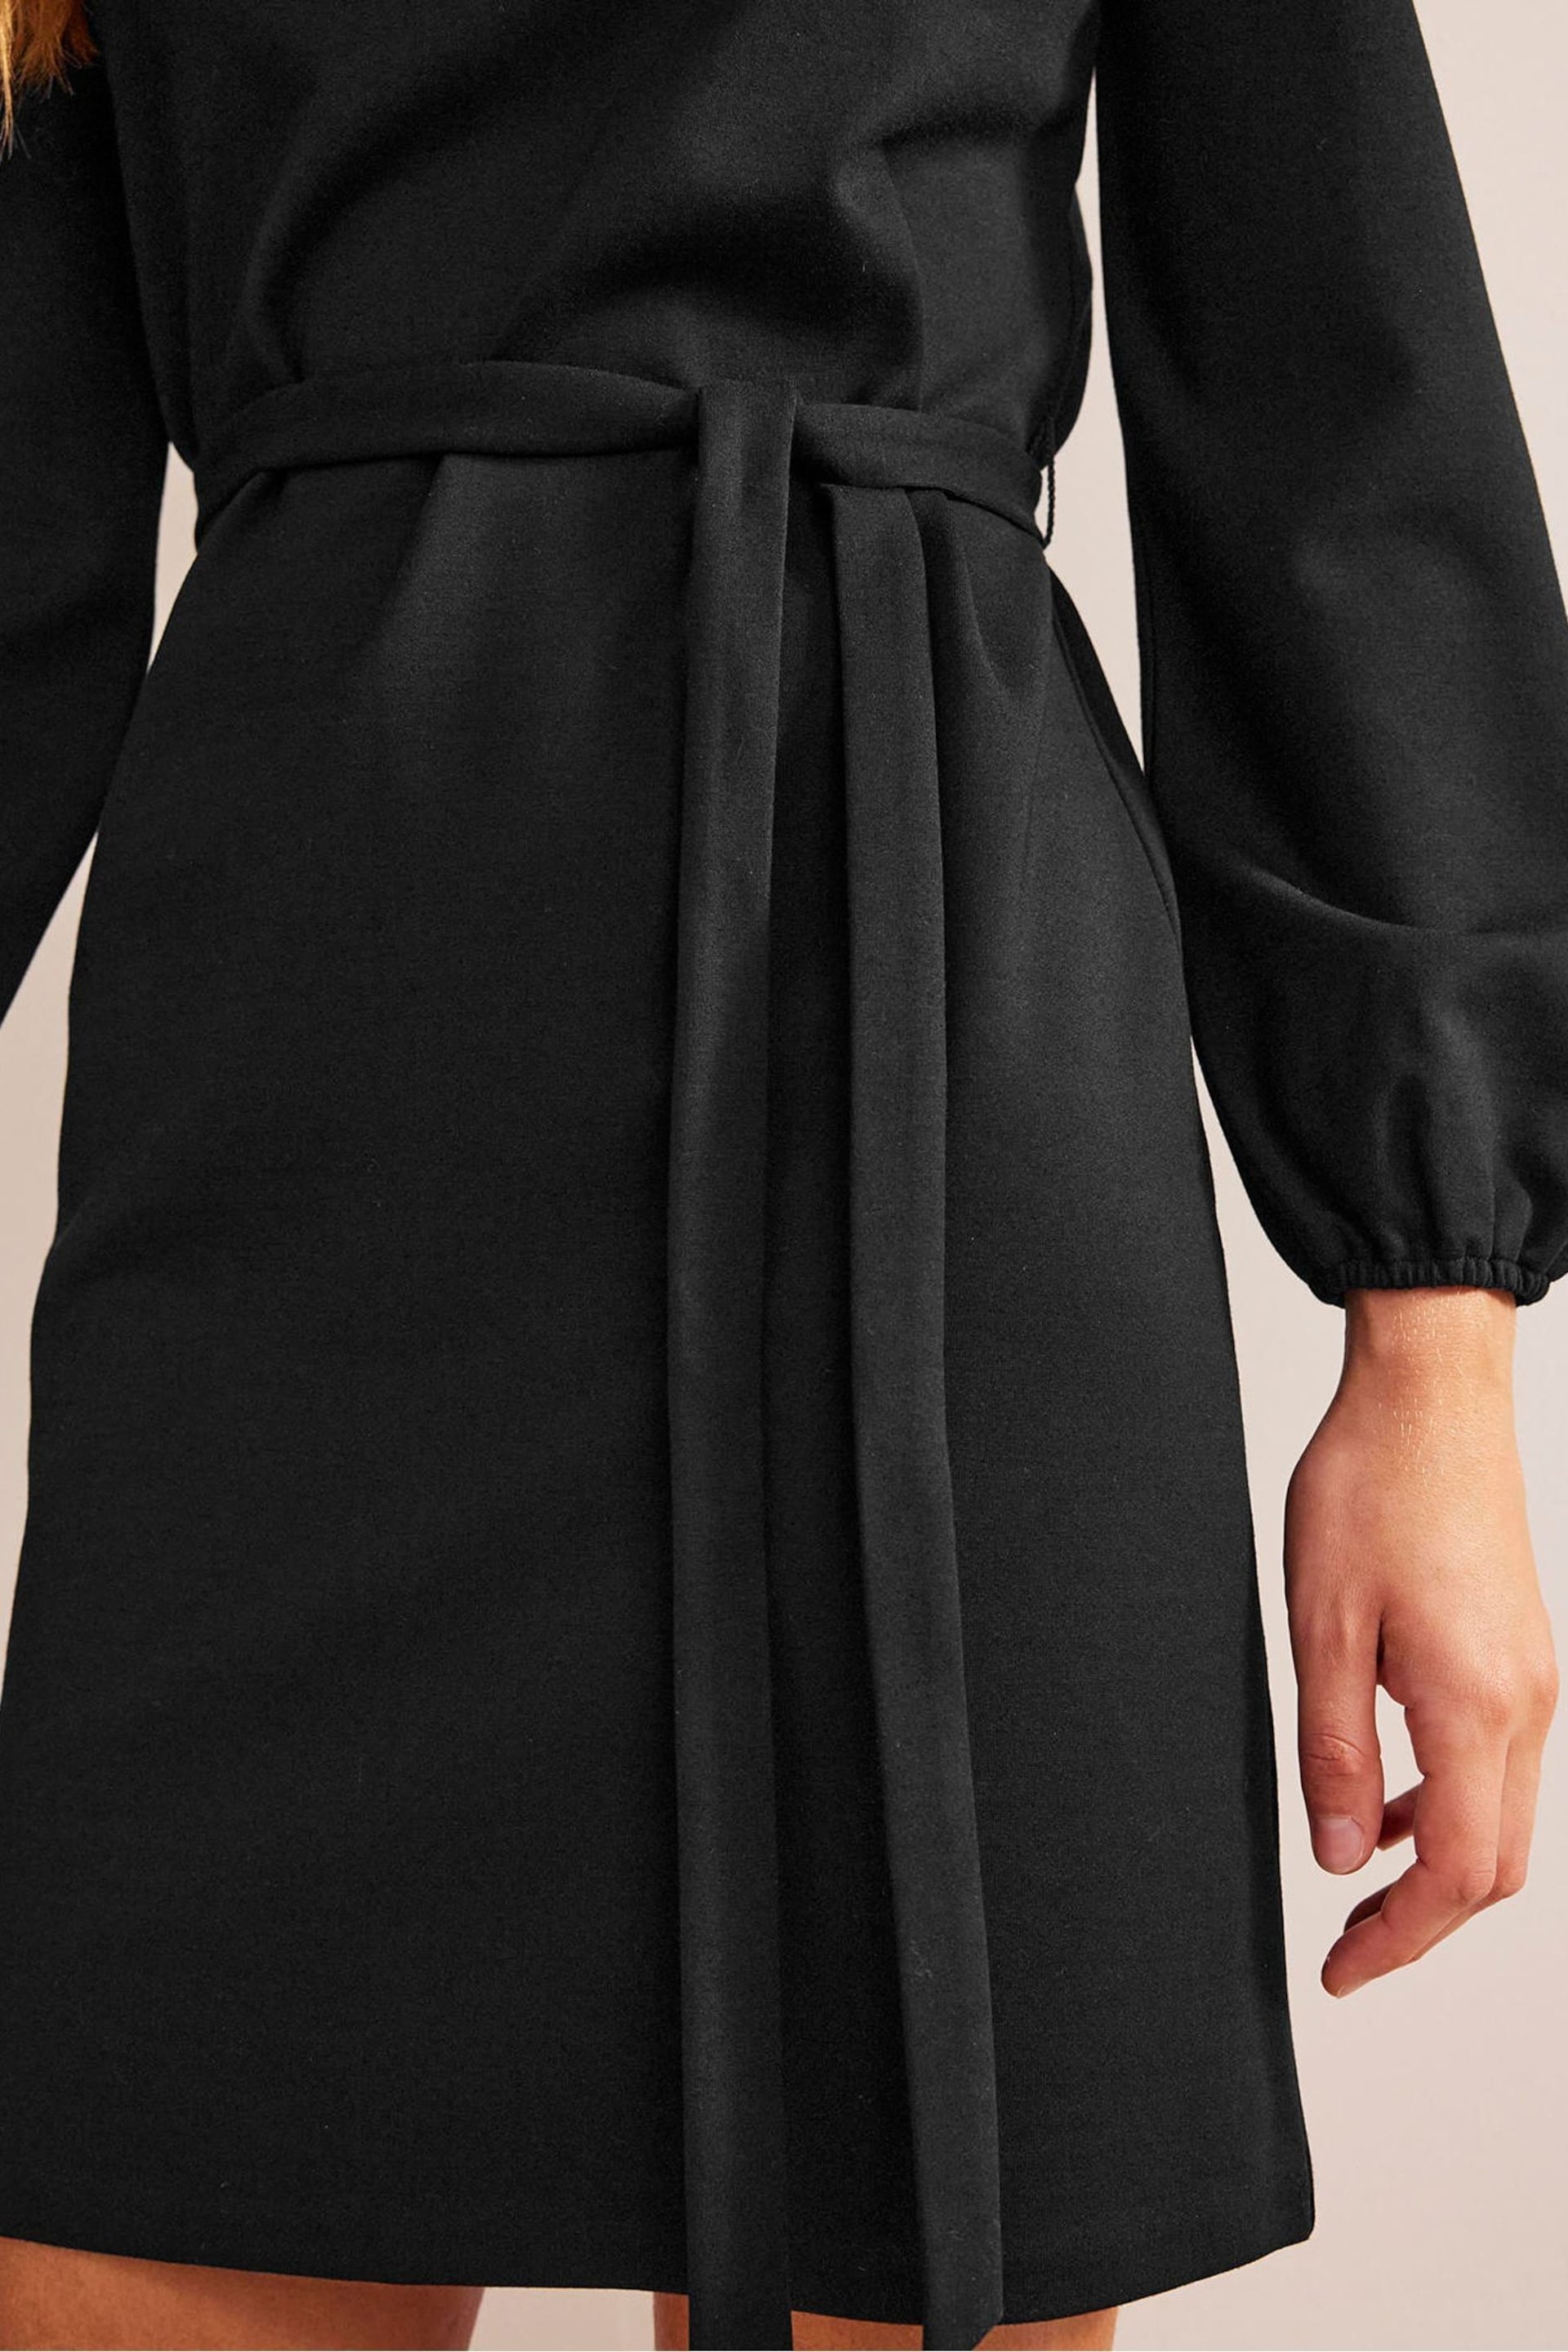 Boden Black Violet Jersey Shift Dress - Image 4 of 6